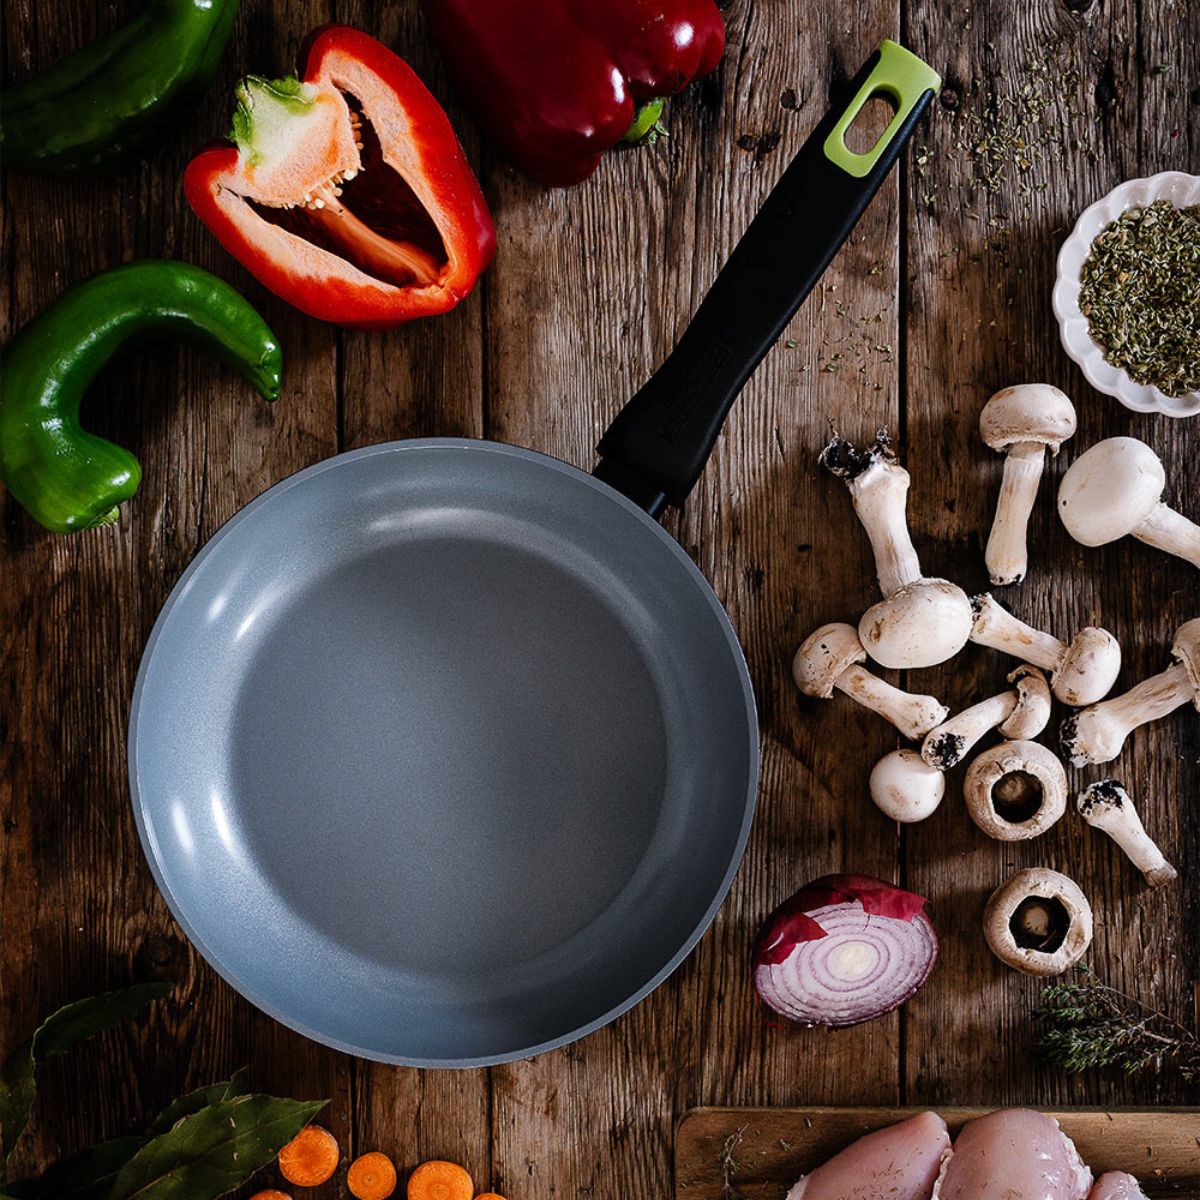 Monix Costa Rica - ¡Estilo nuevo para tu cocina! Prepara tus recetas  favoritas ahora en tus nuevos sartenes antiadherentes de GRANITO ✓ Fondo de  inducción total que brinda calor uniforme ✓ Apto